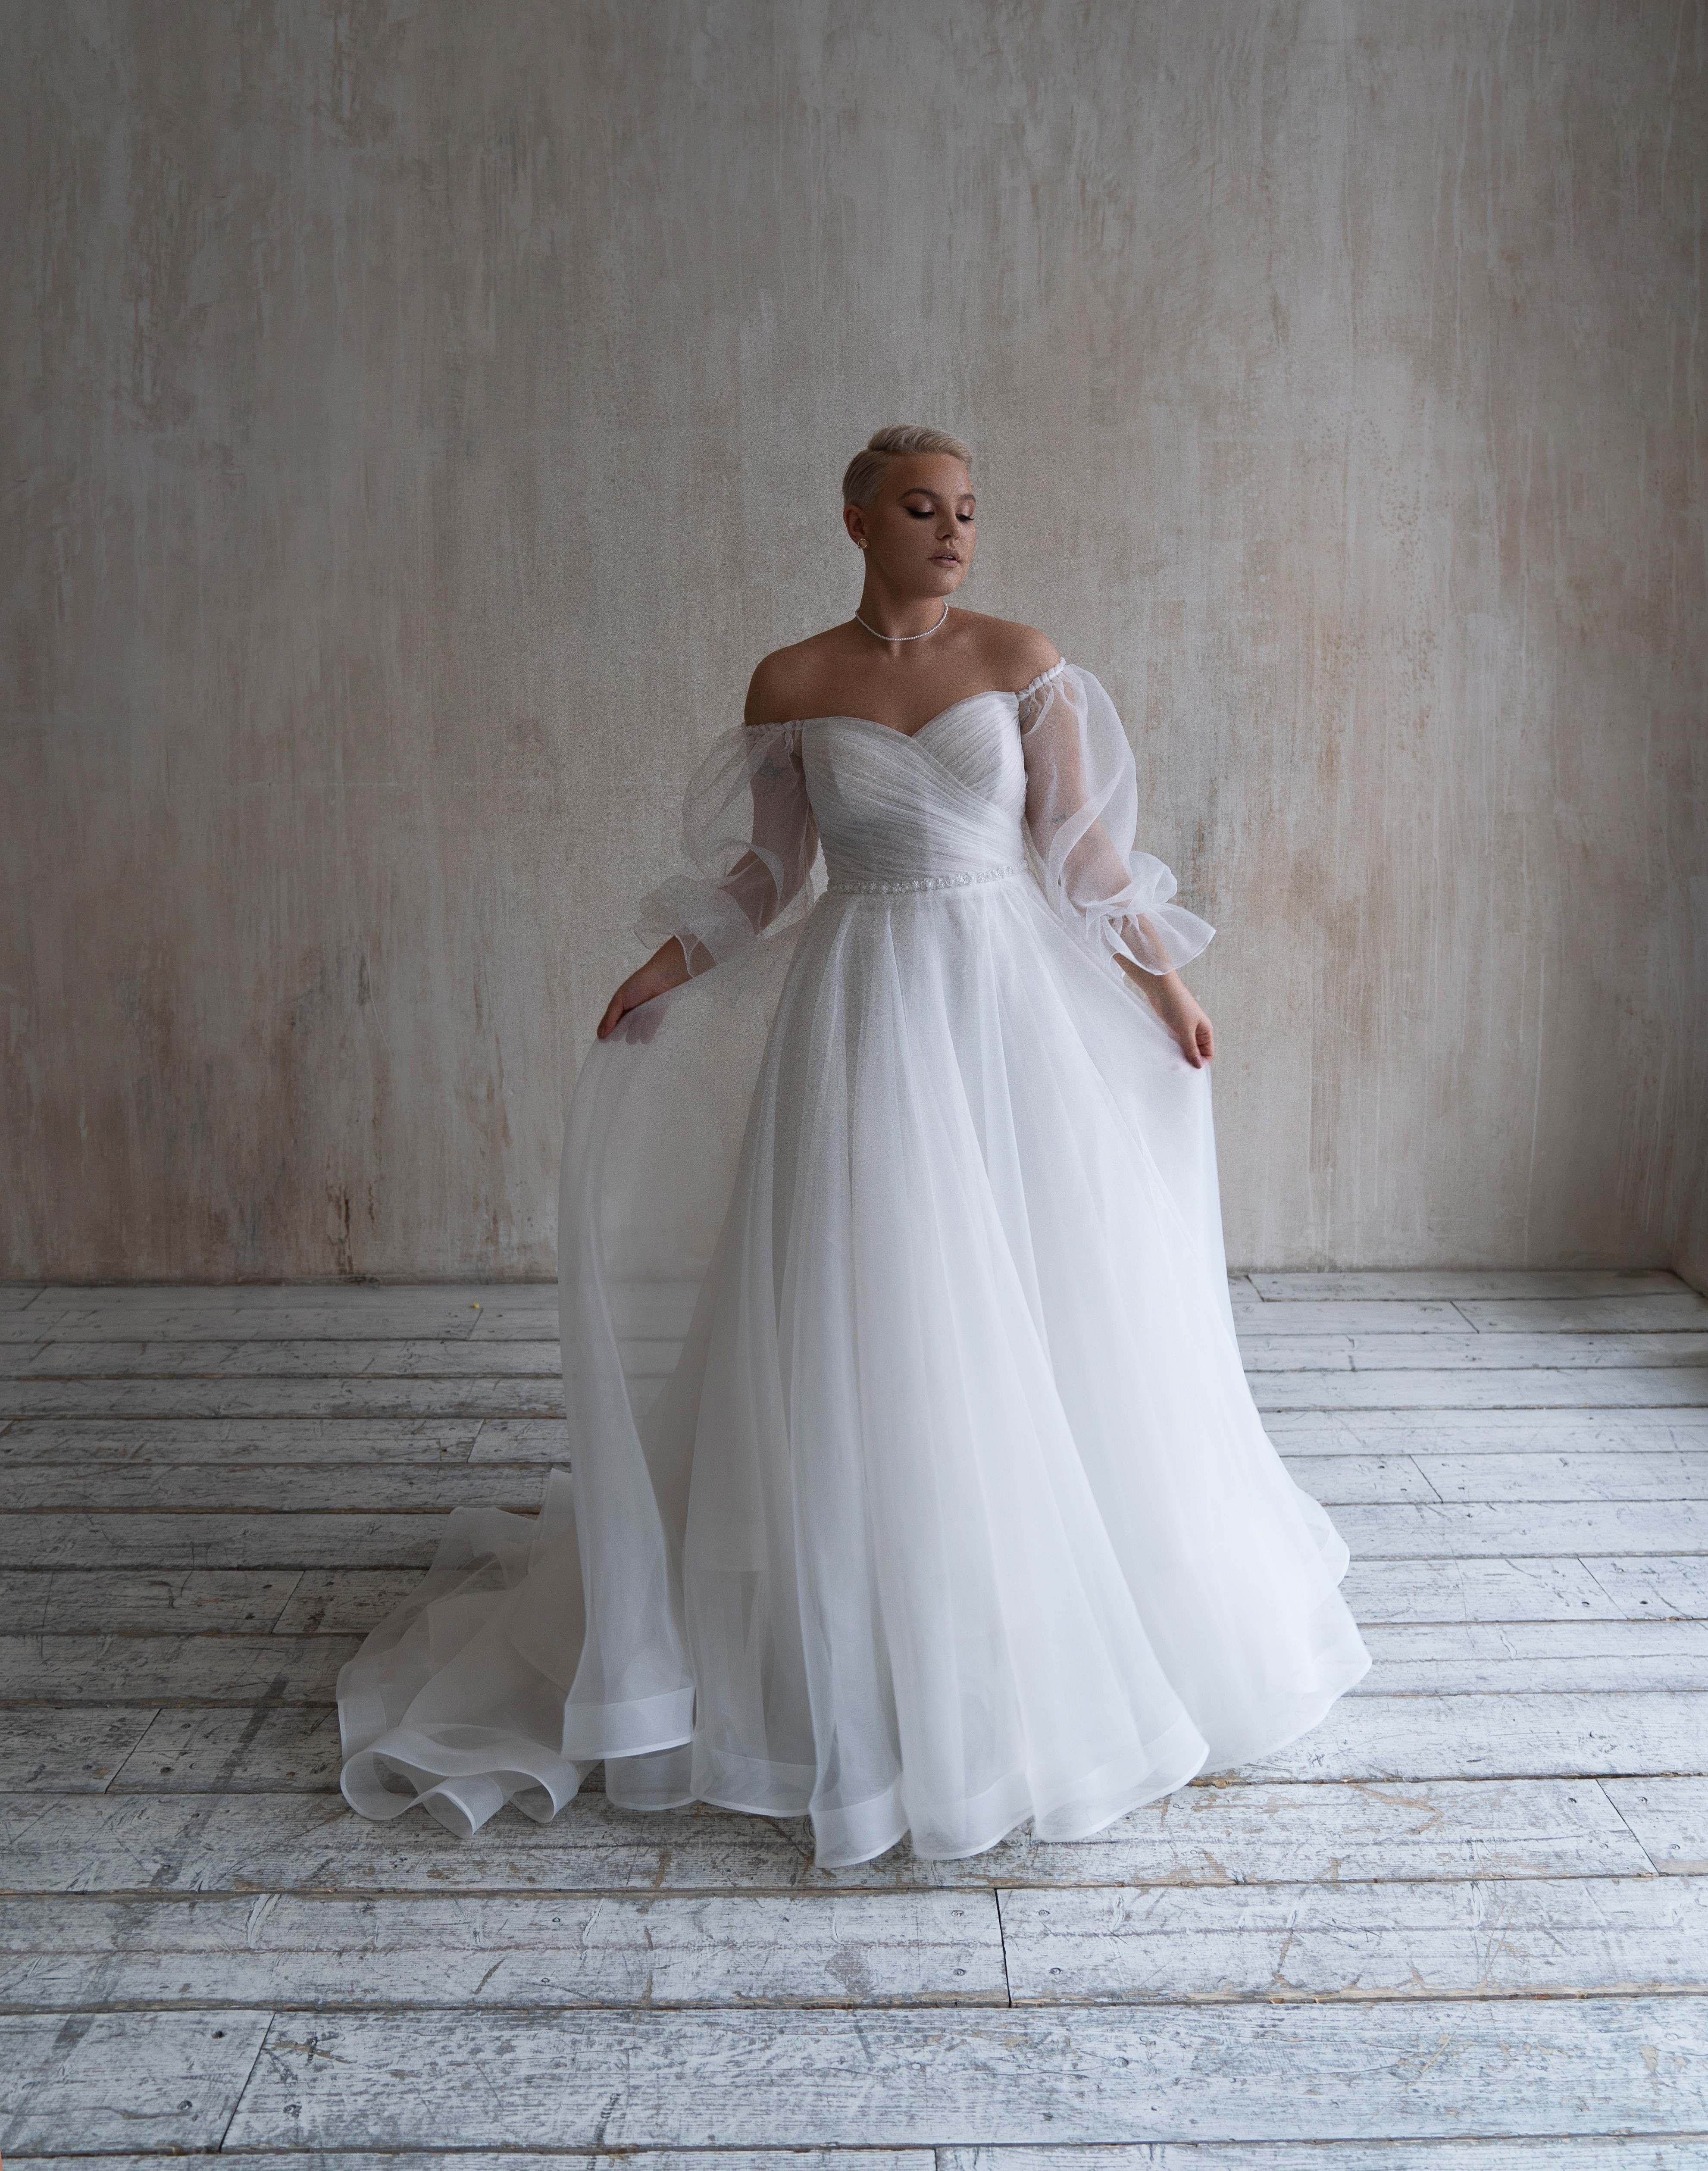 Купить свадебное платье «Шана плюс сайз» Натальи Романовой из коллекции 2021 в салоне «Мэри Трюфель»